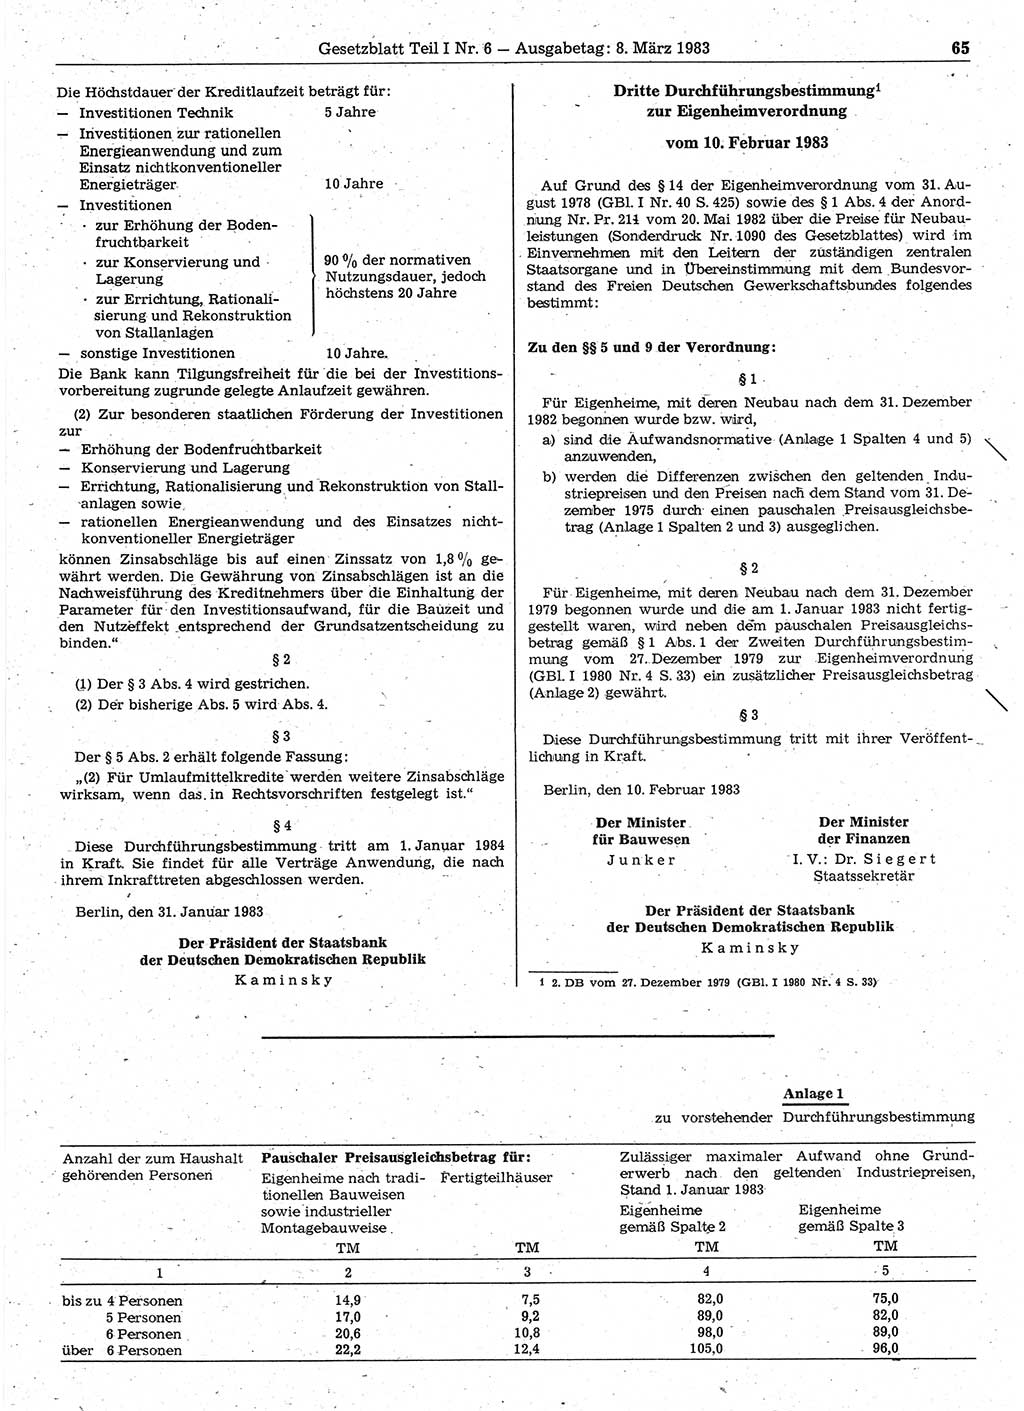 Gesetzblatt (GBl.) der Deutschen Demokratischen Republik (DDR) Teil Ⅰ 1983, Seite 65 (GBl. DDR Ⅰ 1983, S. 65)